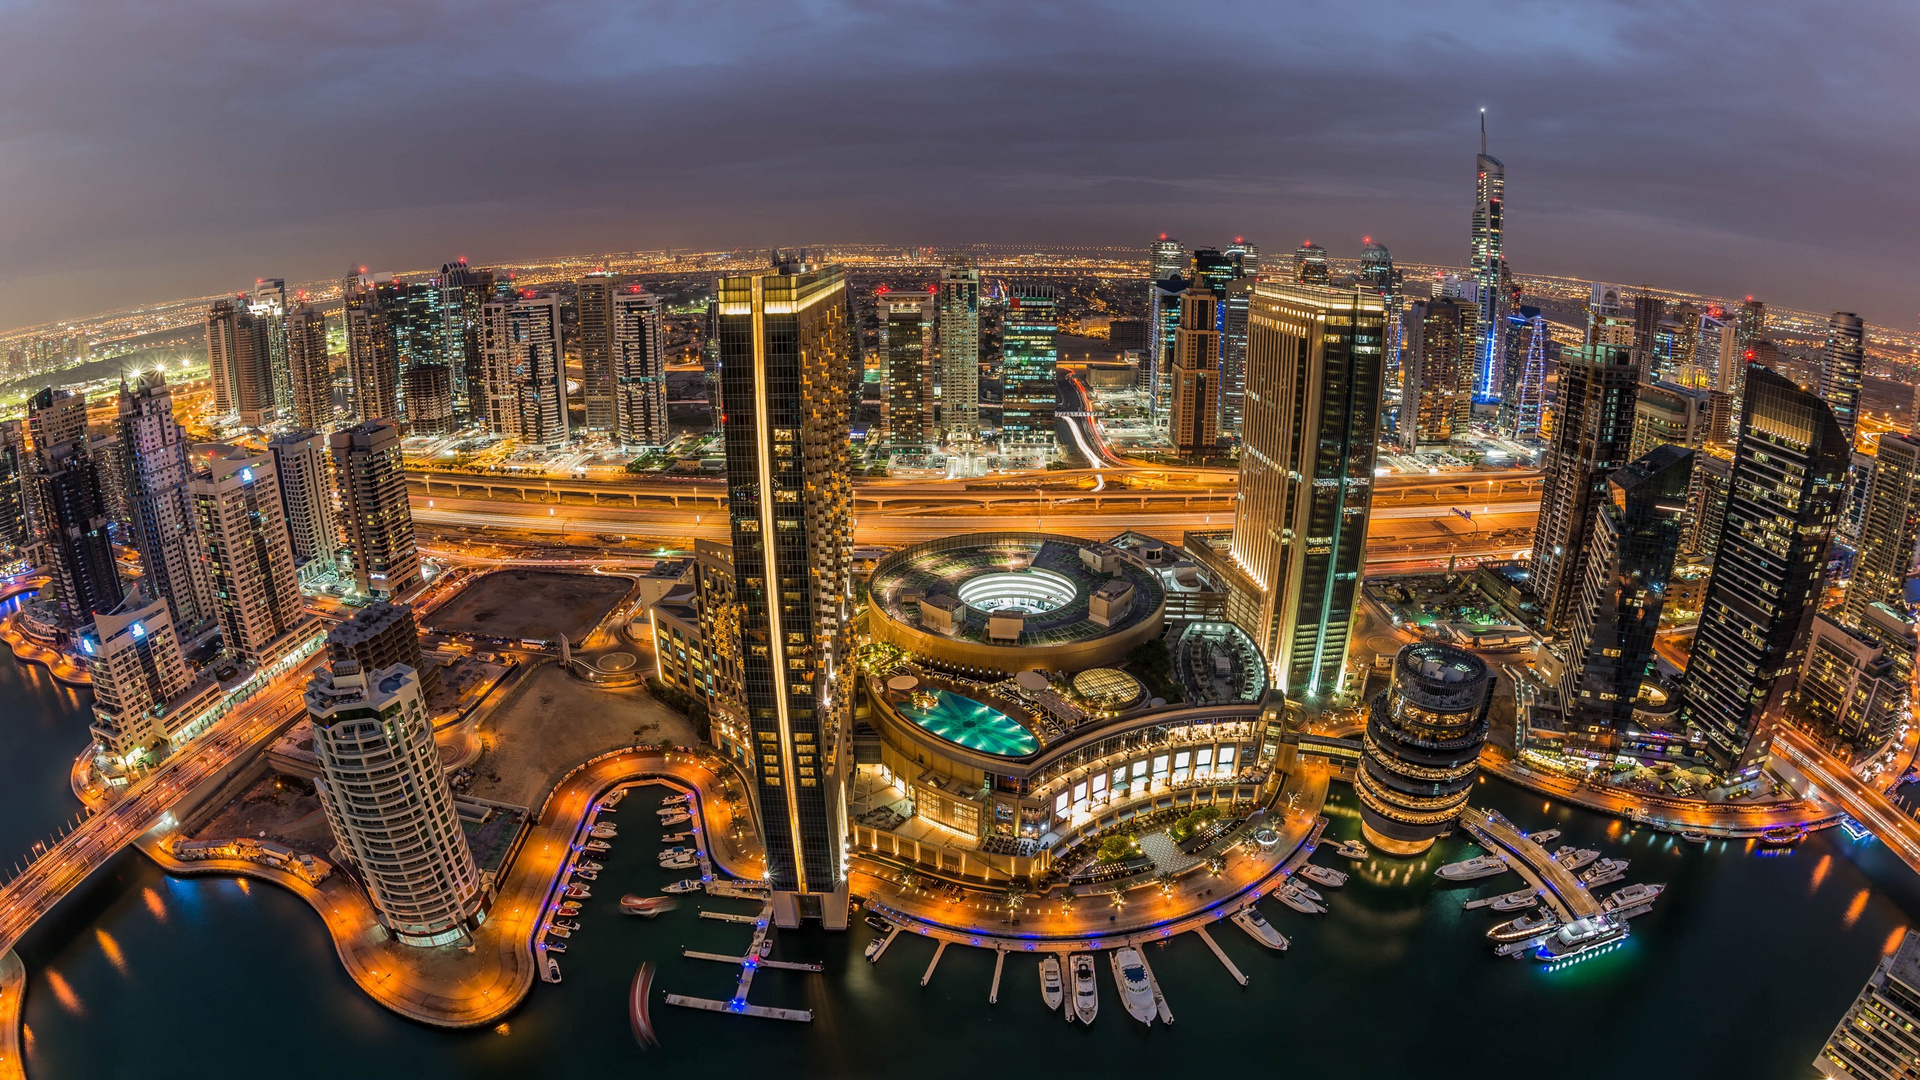 Dubai-Marina - November 2013